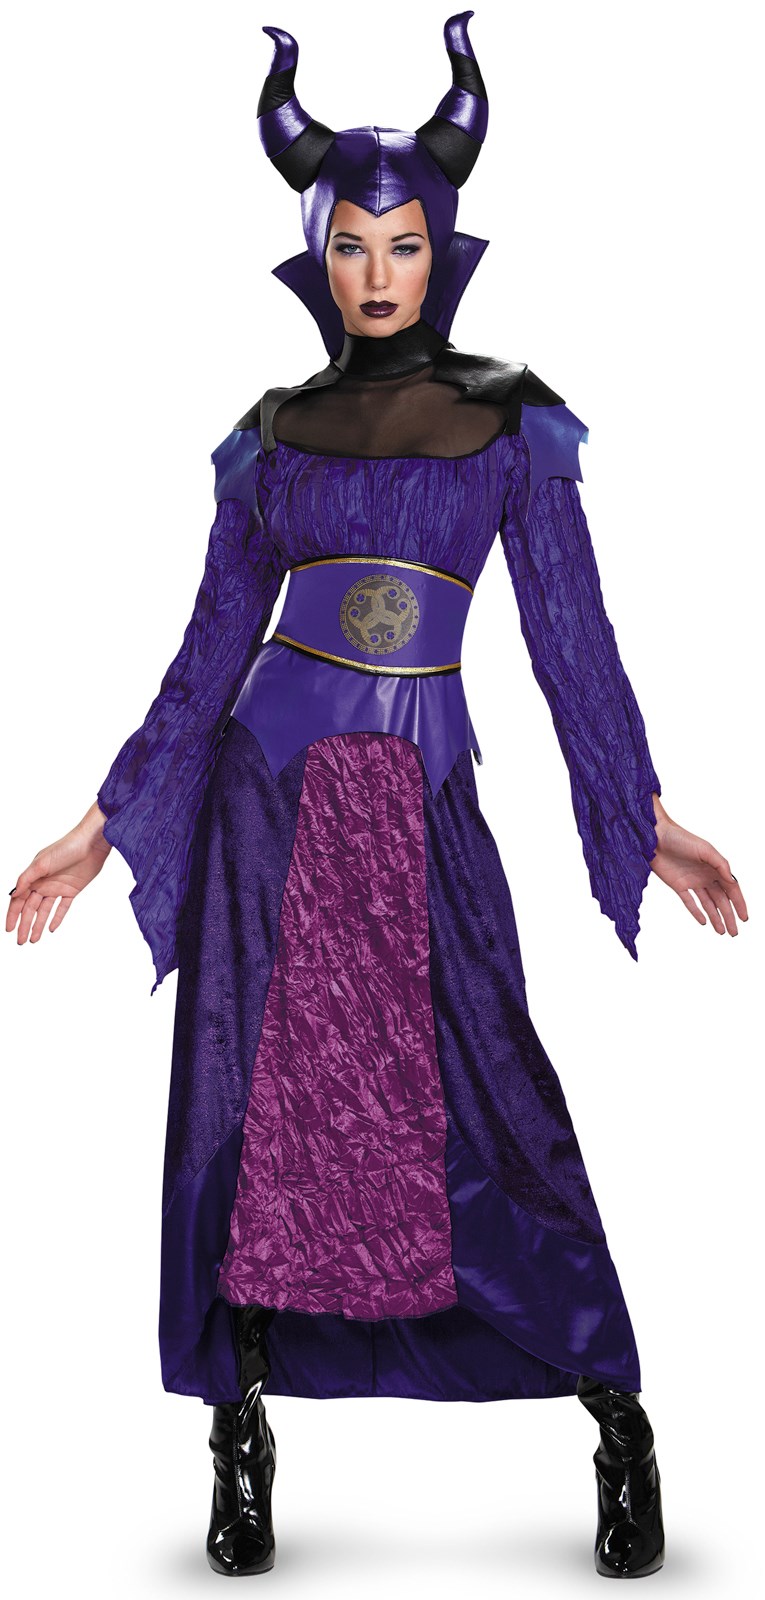 Disneys Descendants: Deluxe Maleficent Costume For Women